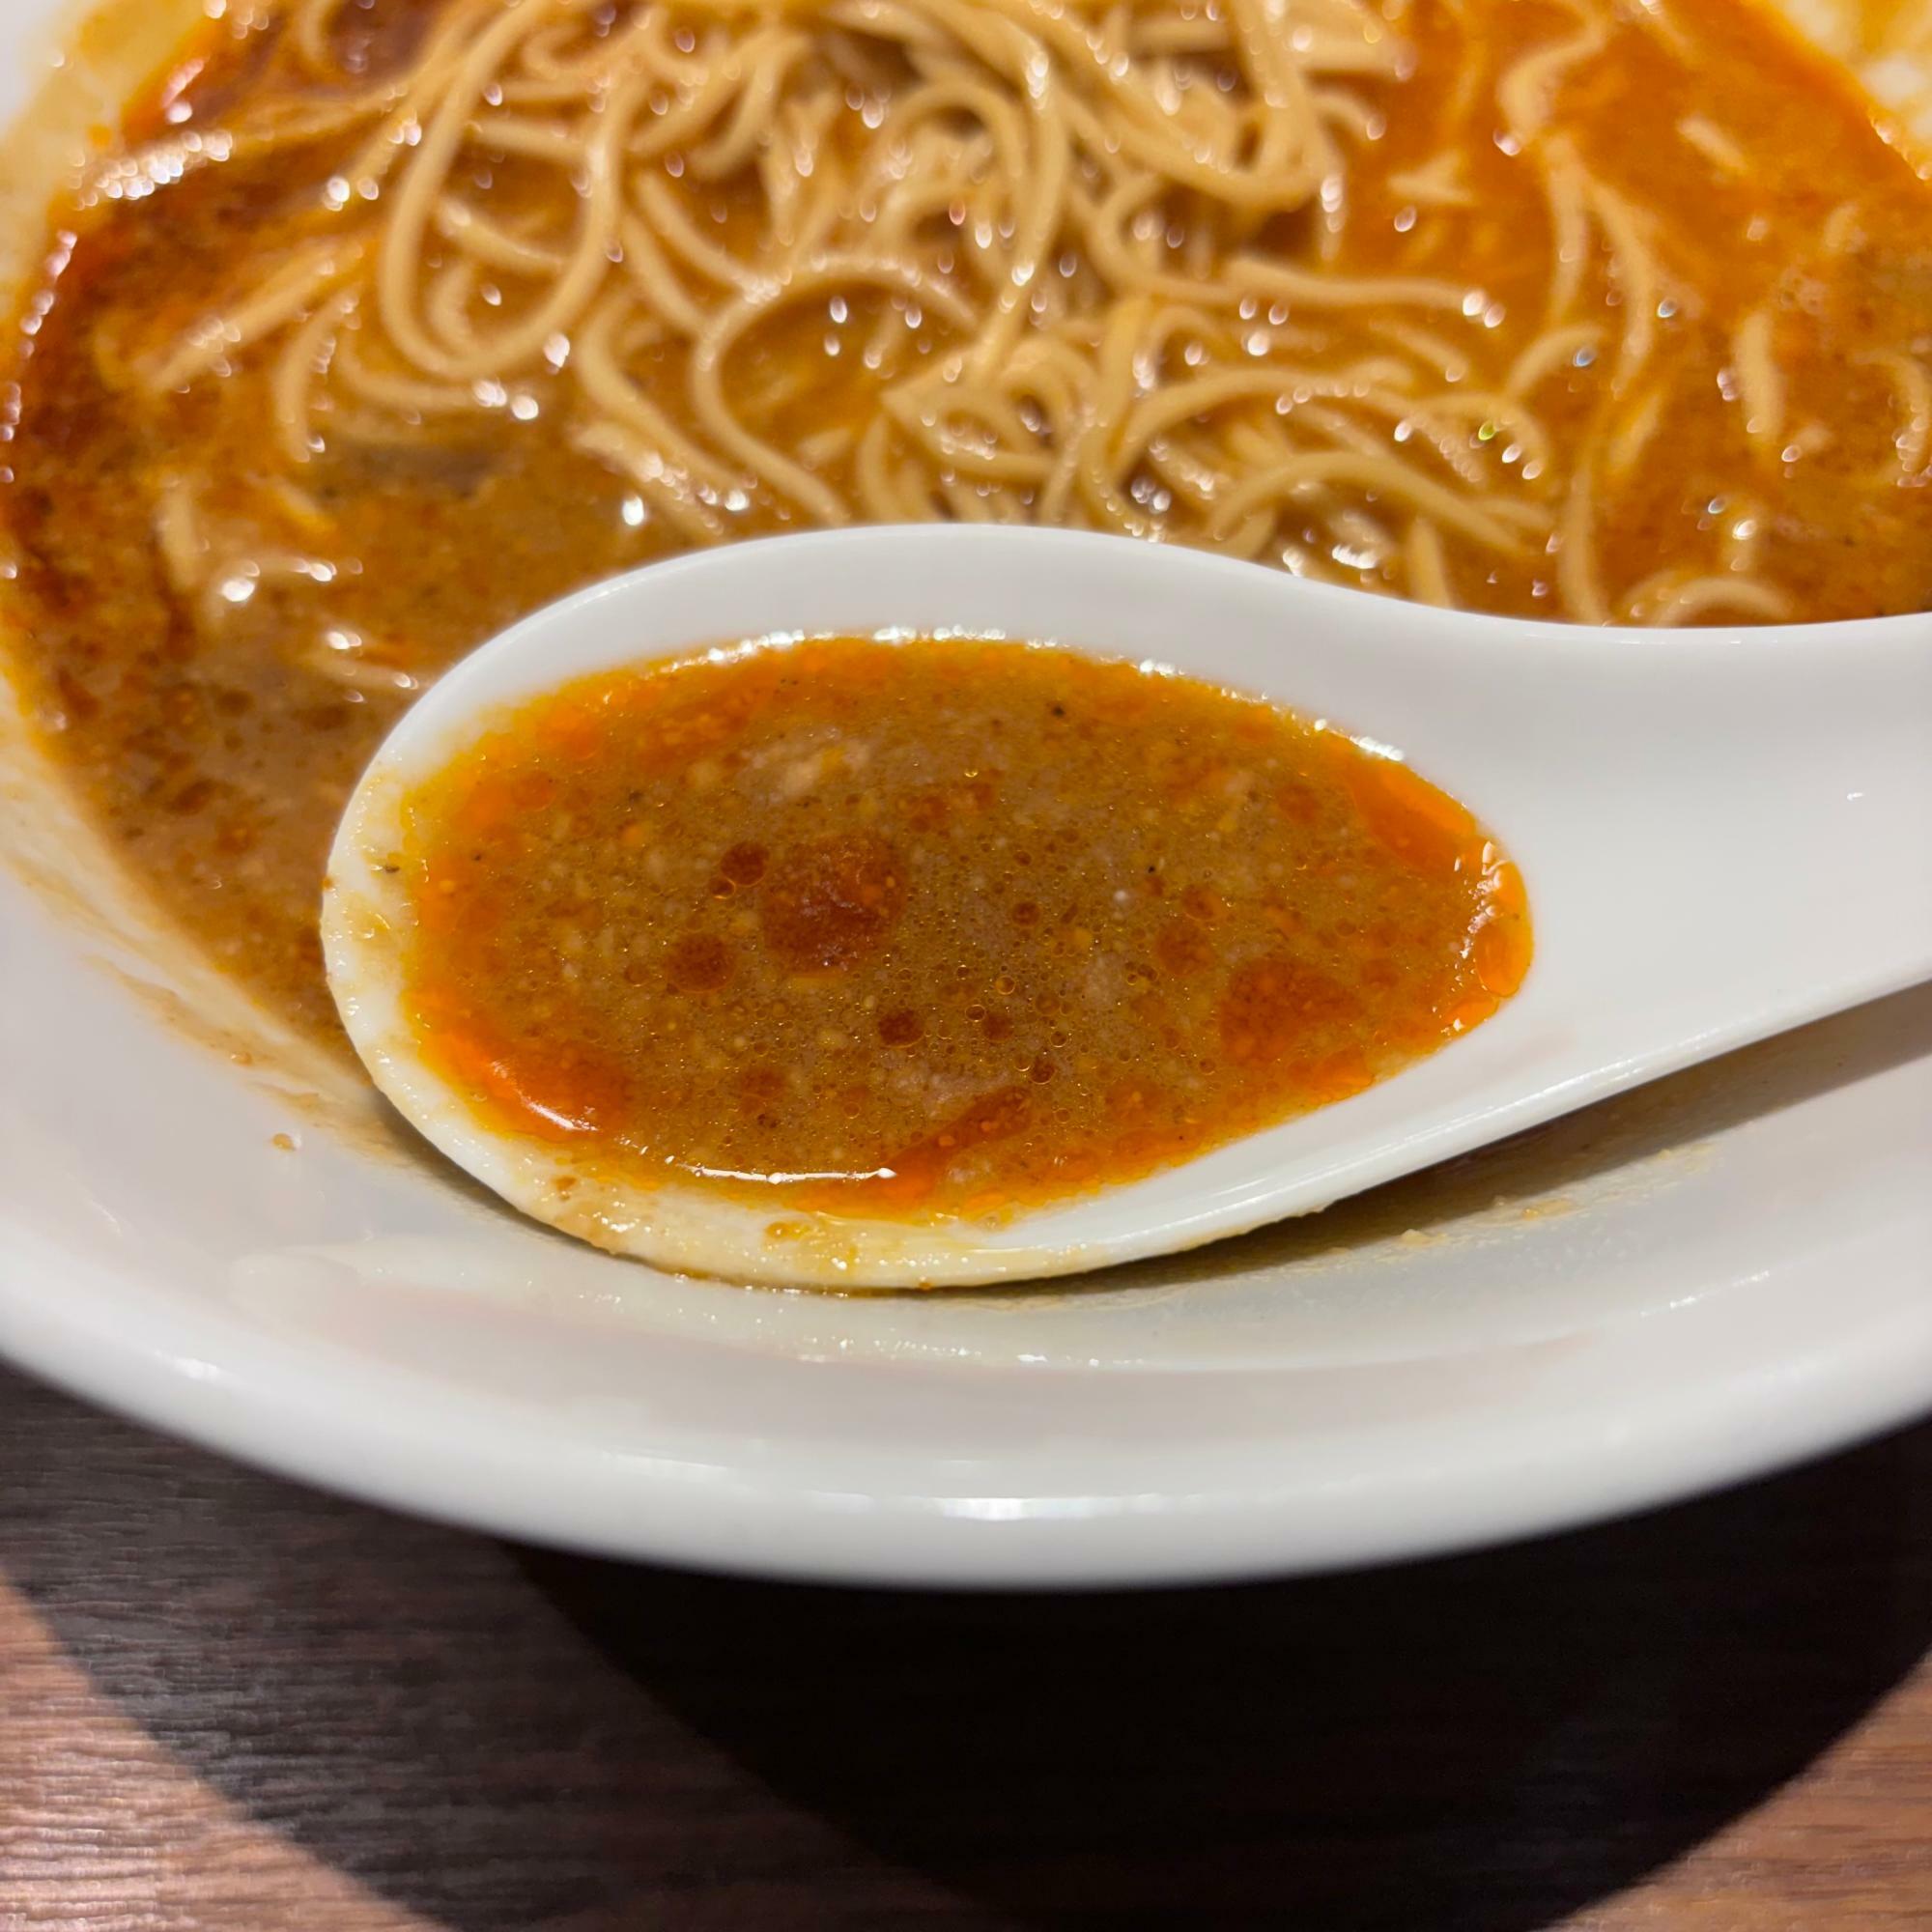 スープは化学調味料不使用の無化調スープです。